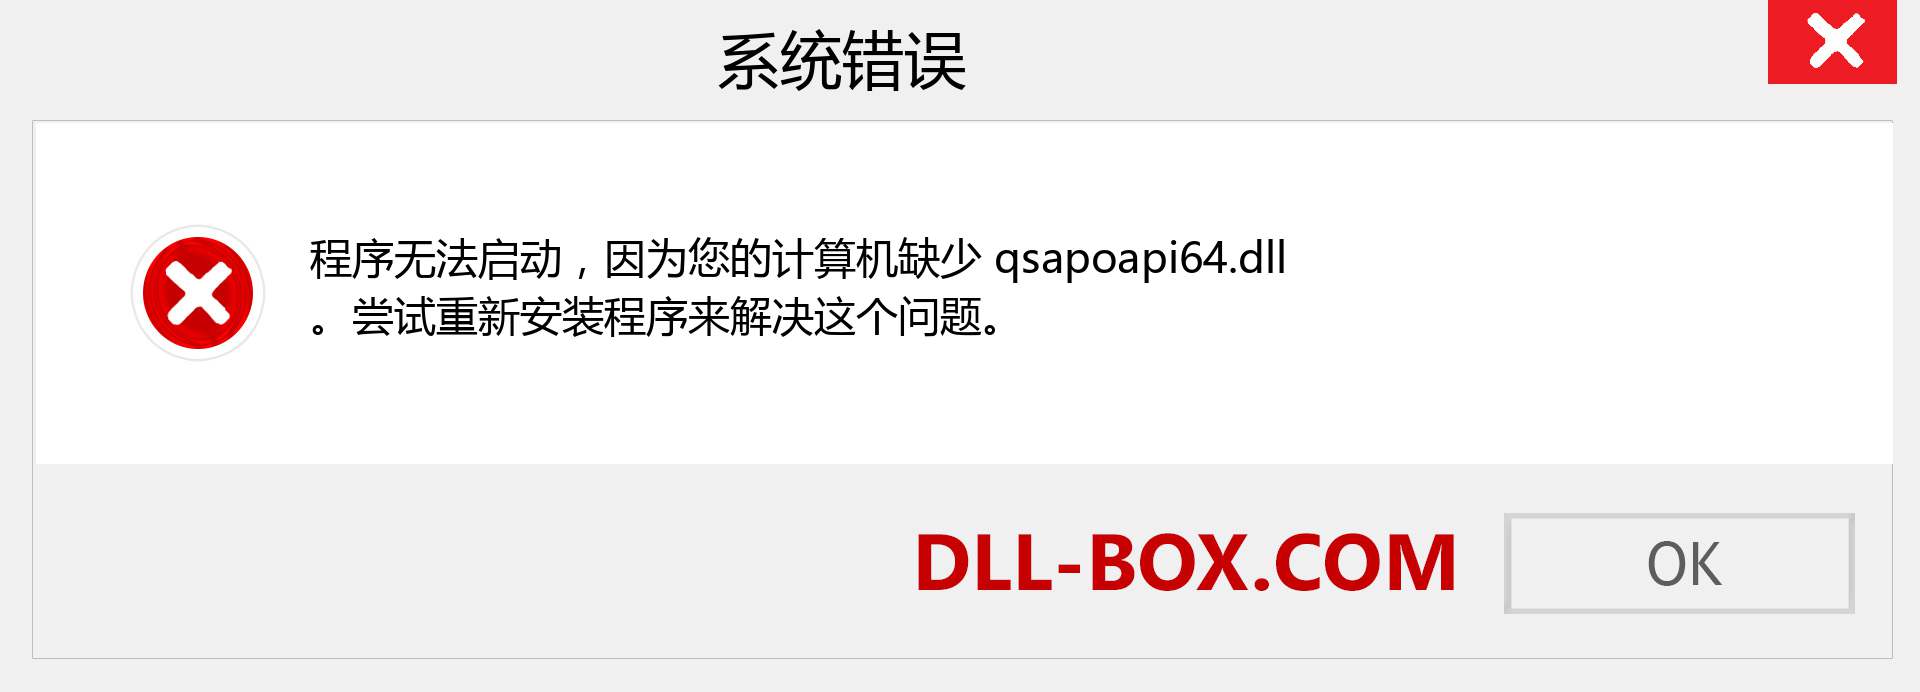 qsapoapi64.dll 文件丢失？。 适用于 Windows 7、8、10 的下载 - 修复 Windows、照片、图像上的 qsapoapi64 dll 丢失错误